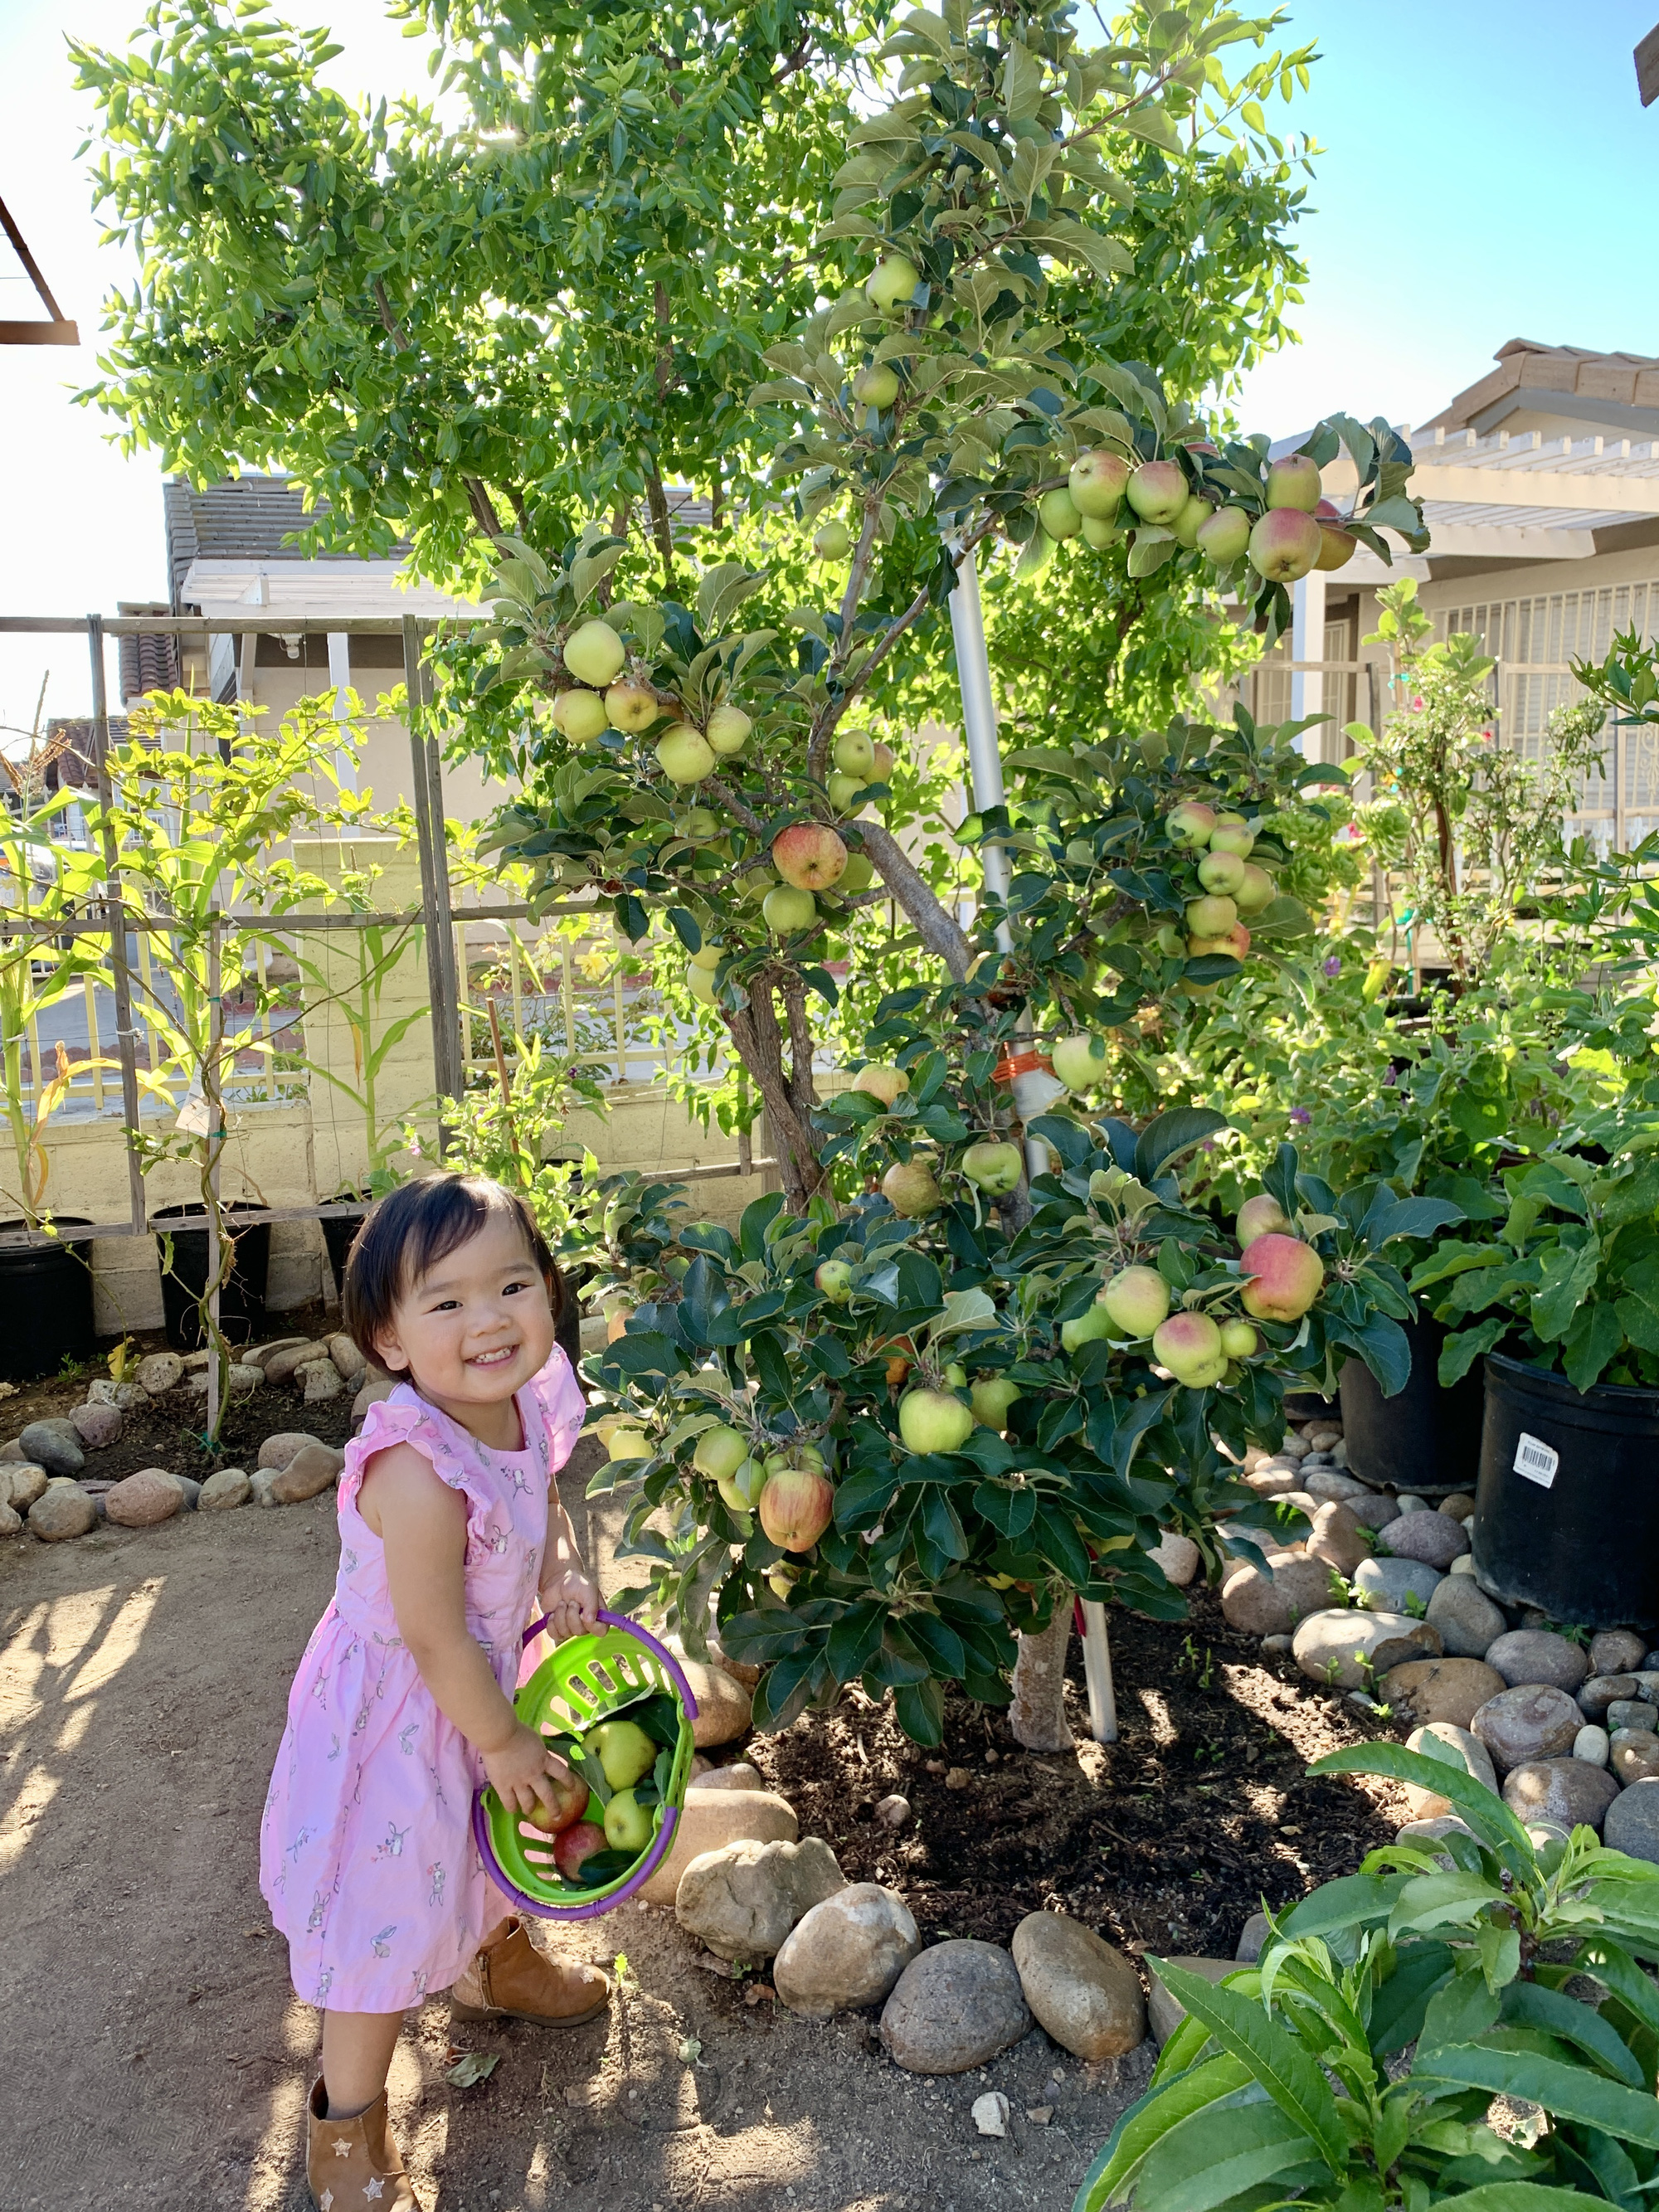 Vợ đảm ở Mỹ khoe vườn 450m2 ngập tràn hoa trái giống Việt, tiết lộ bí quyết vàng để cây đạt năng suất, quả trĩu trịt quanh năm - Ảnh 24.